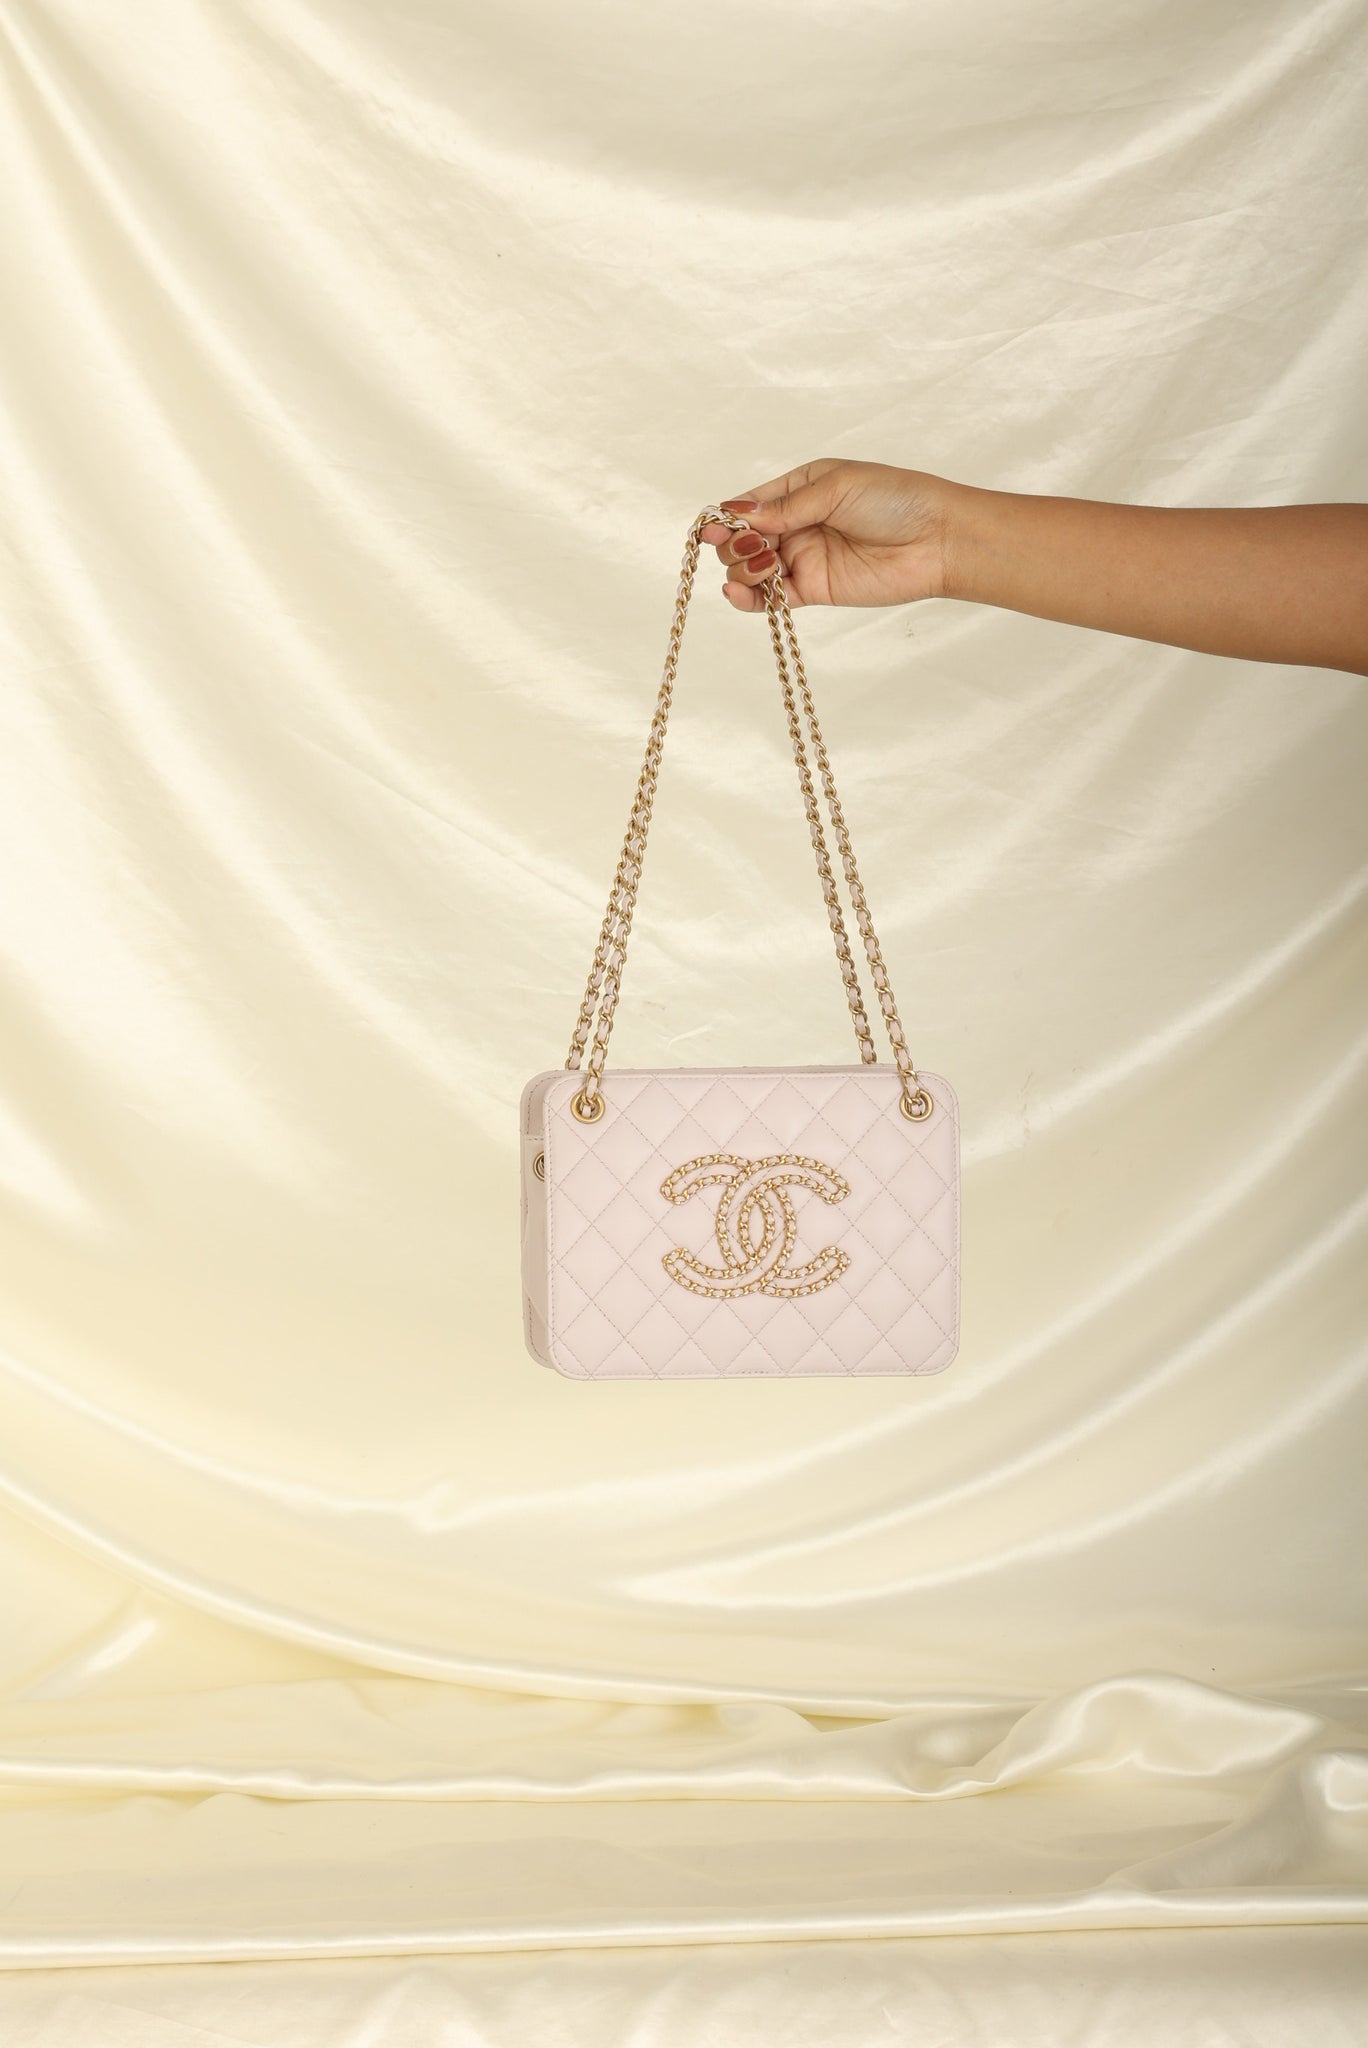 Chanel Handbags Spring 2020 Campaign